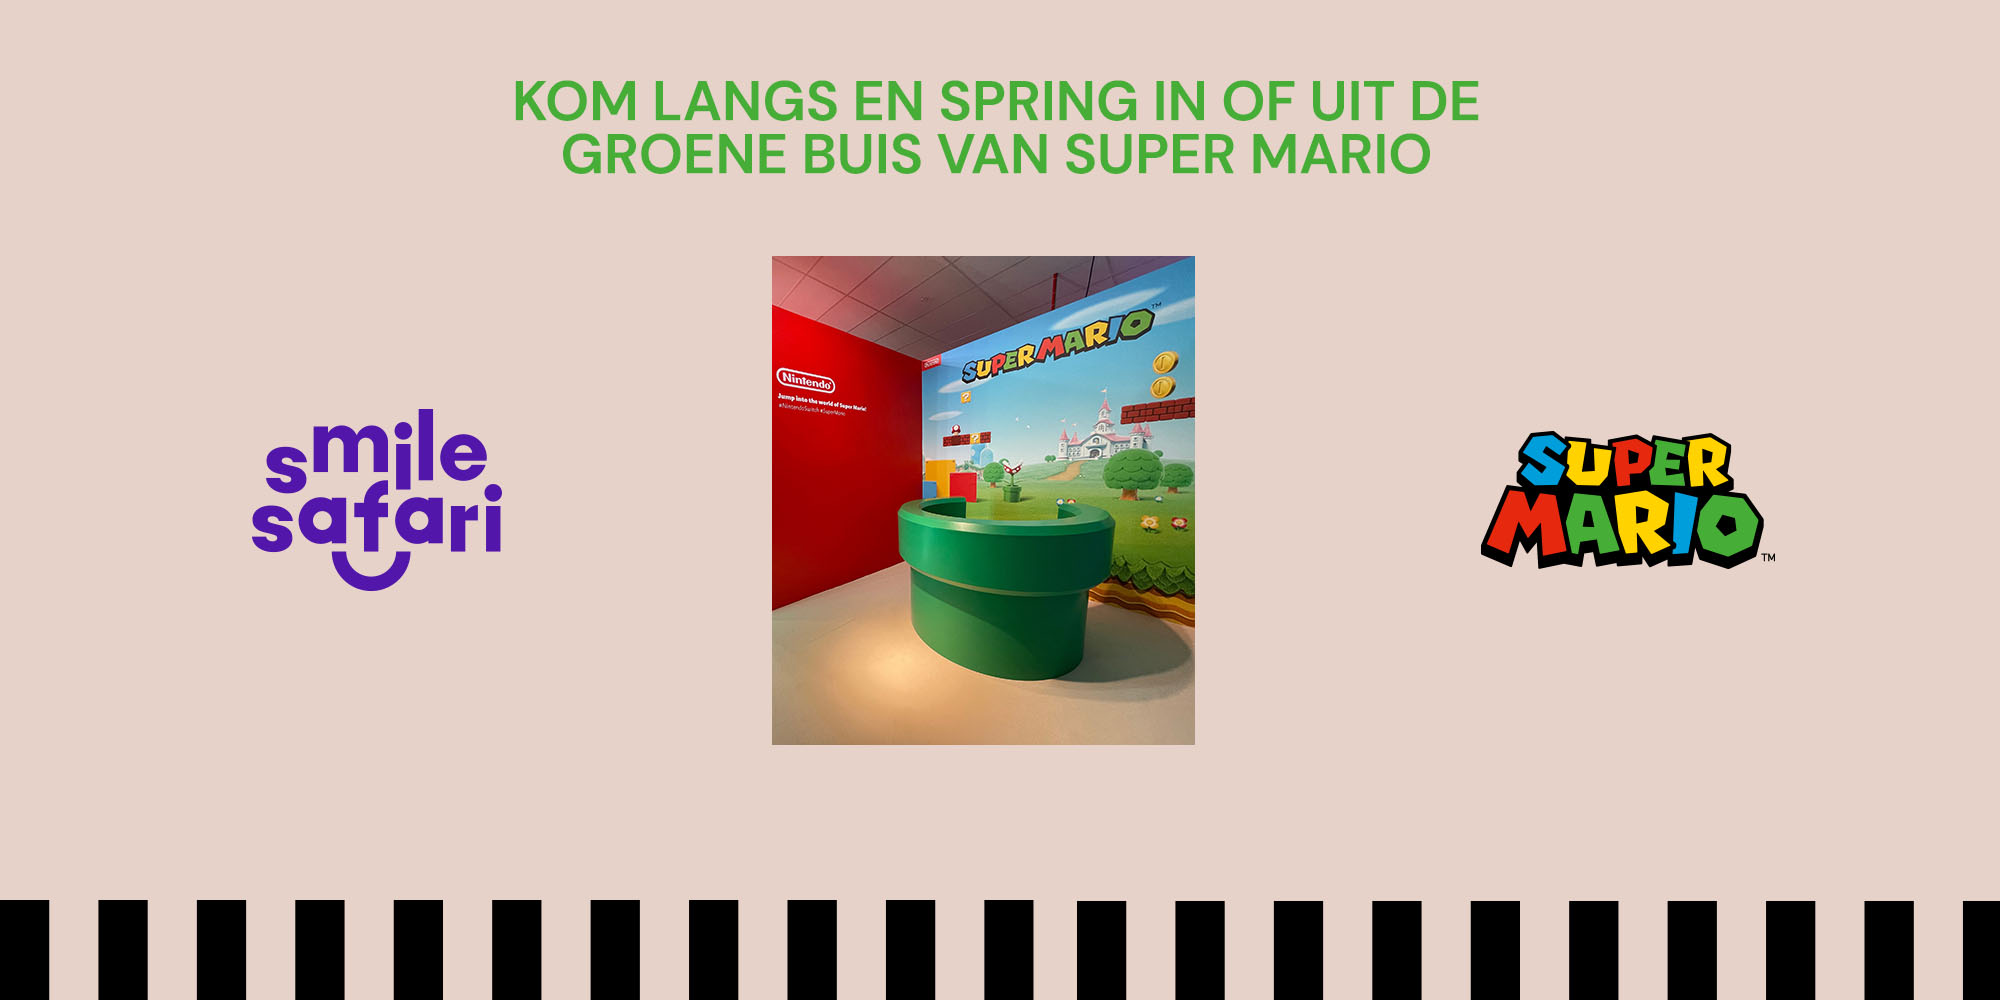 Spring in of uit de groene buis van Super Mario bij Smile Safari!